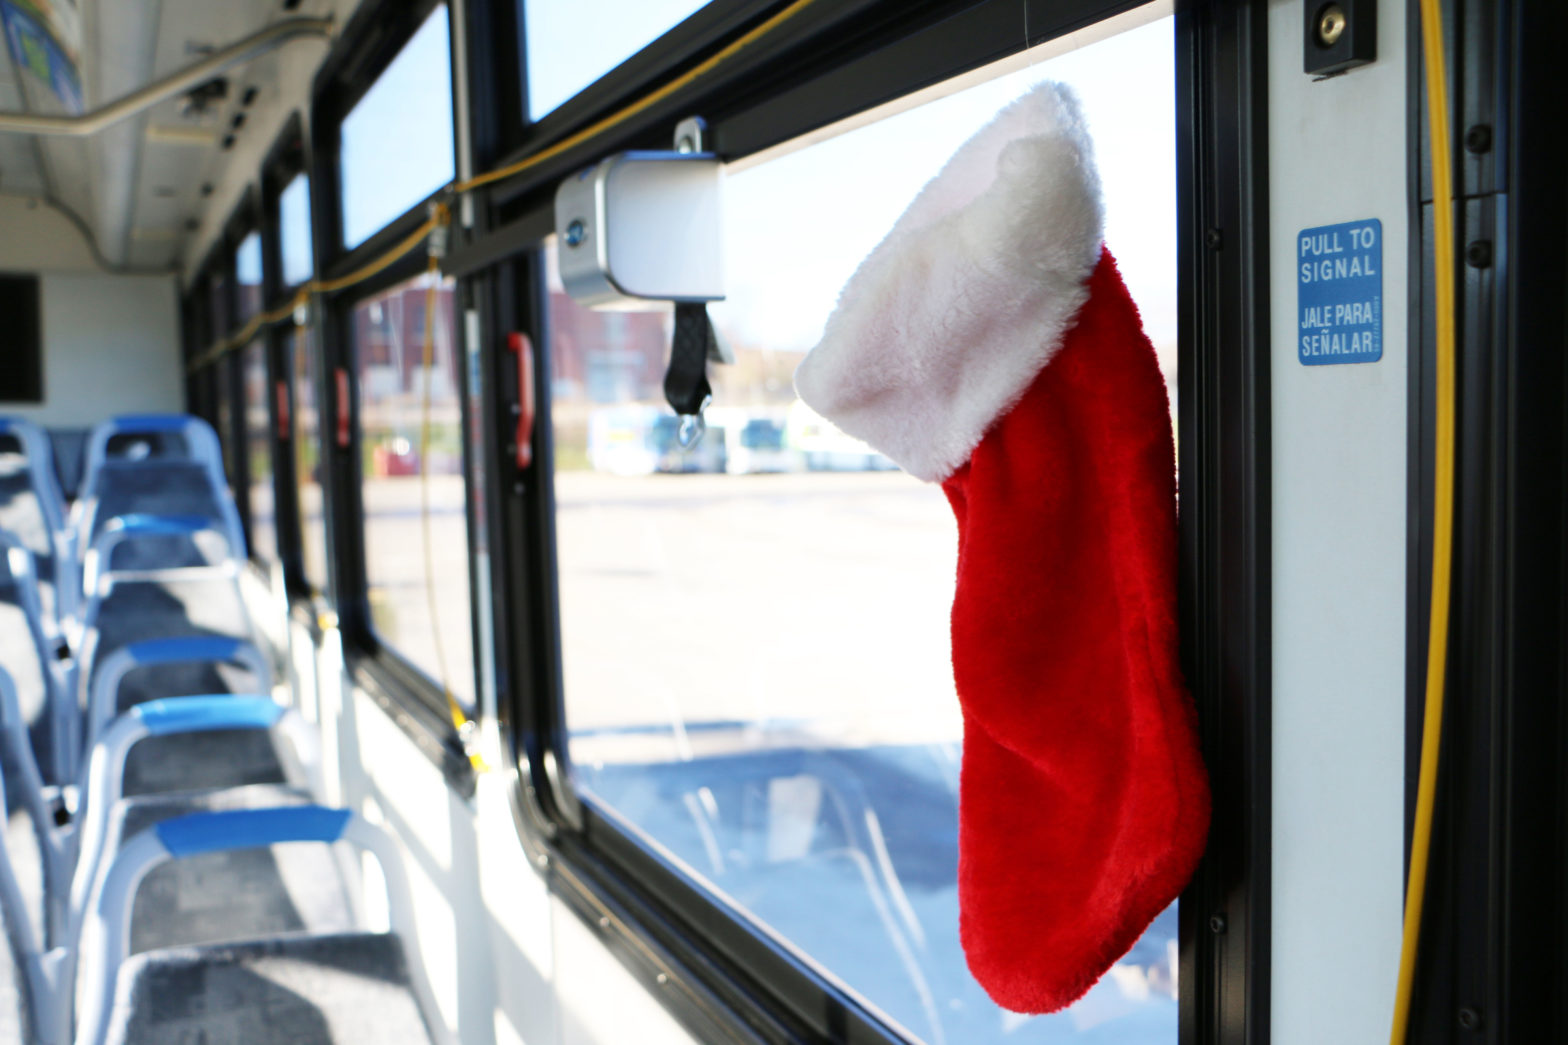 Stocking Hanging in Bus